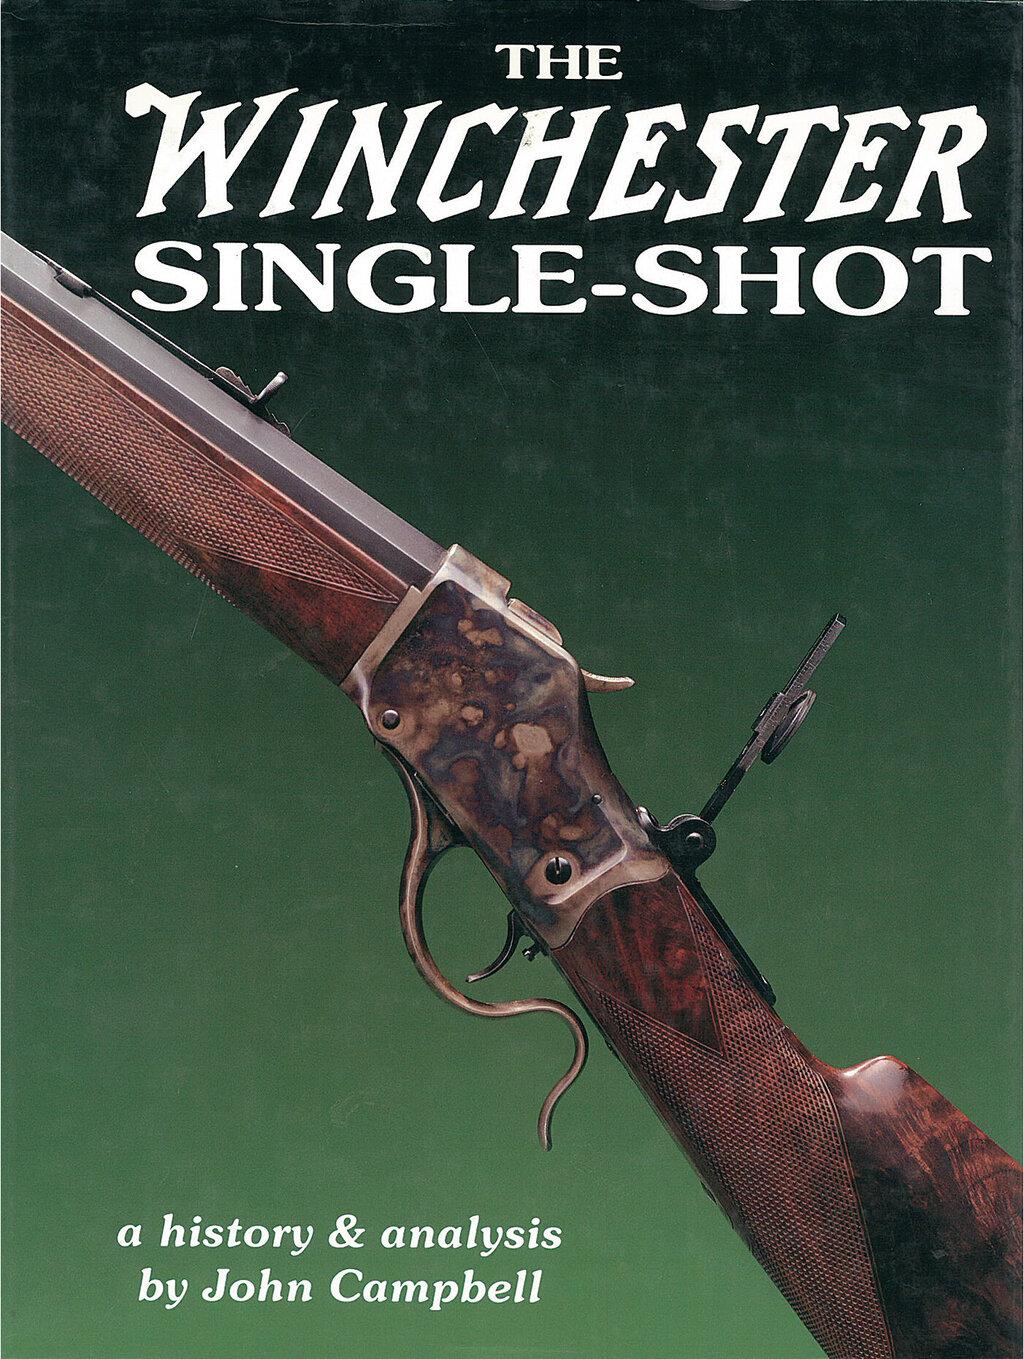 Winchester Model 1885 High Wall Schuetzen Rifle with A5 Scope